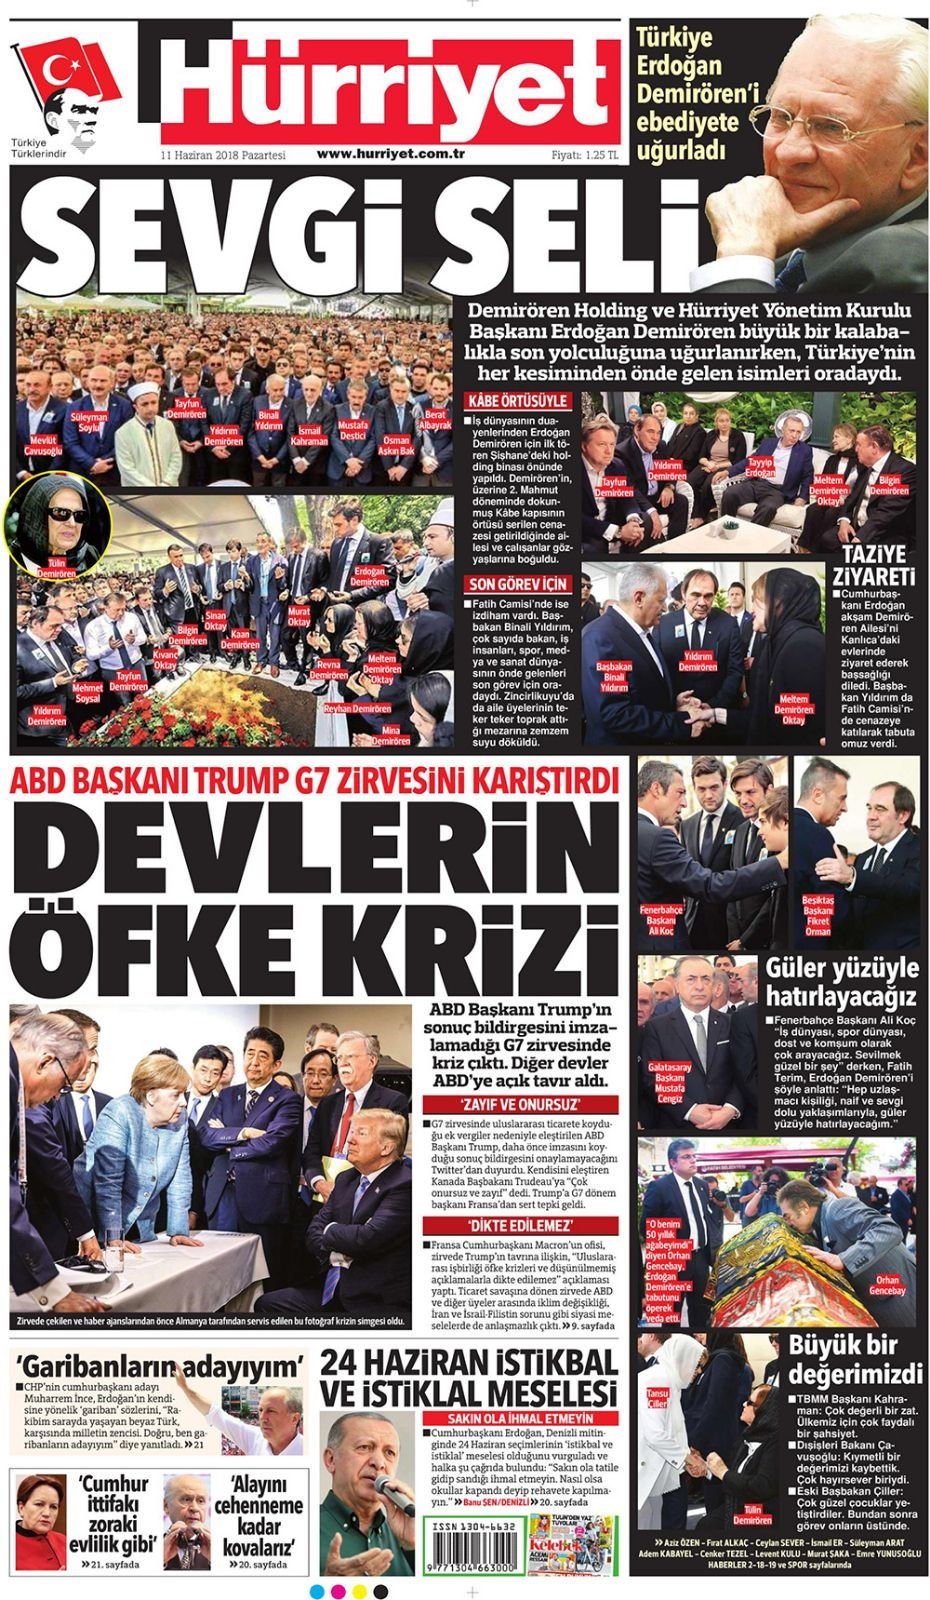 Gazete manşetleri 11 Haziran 2018 Hürriyet - Sözcü - Habertürk